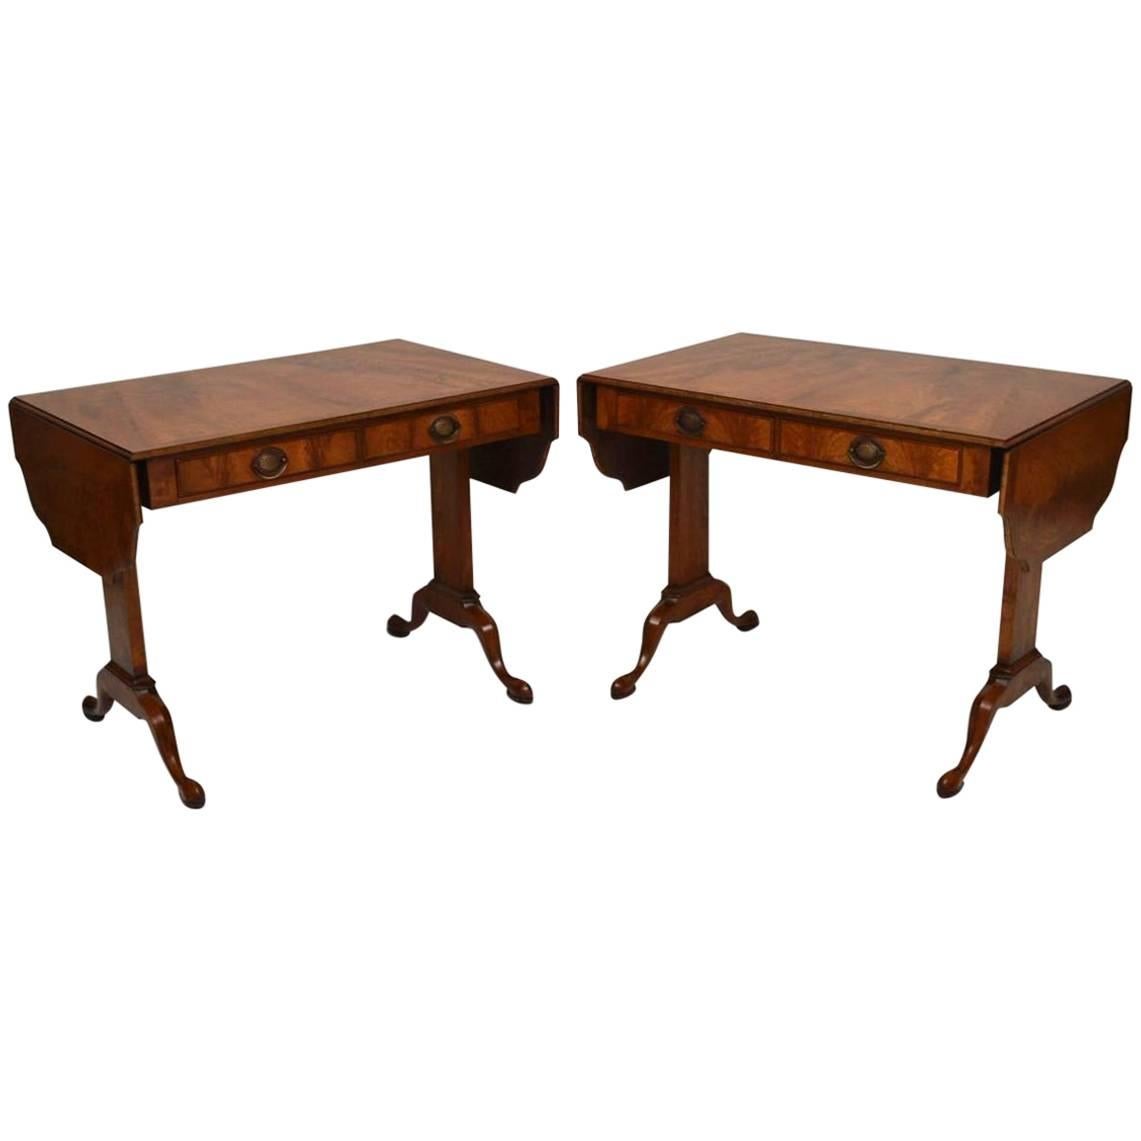 Pair of Antique Burr Walnut Sofa Tables